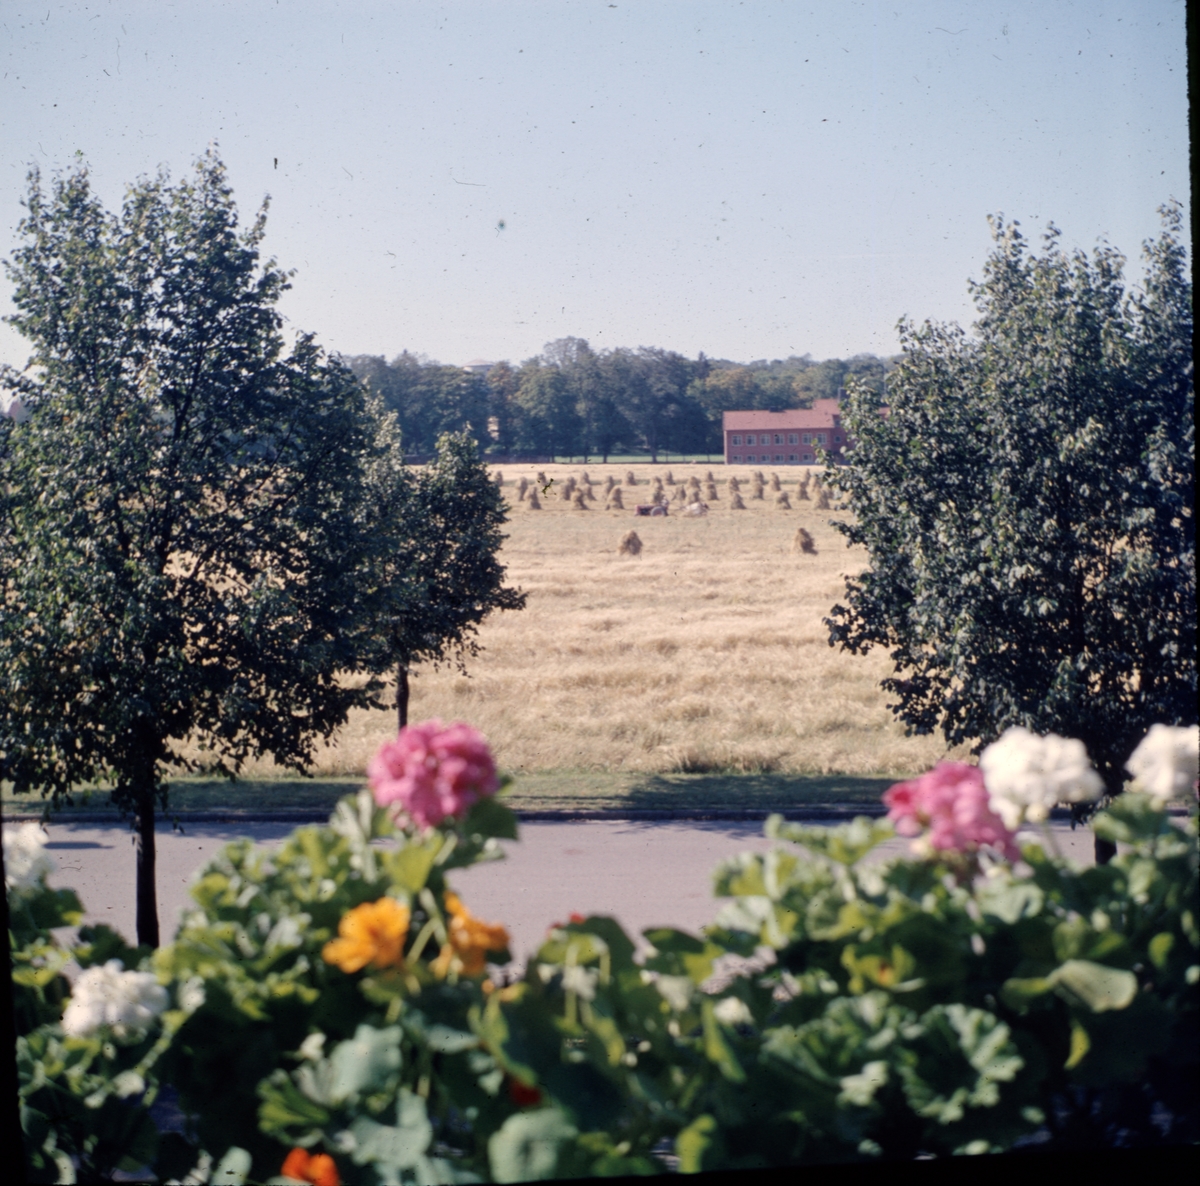 "Gärdet där Humanistiskt centrum kom att byggas", Uppsala september 1956